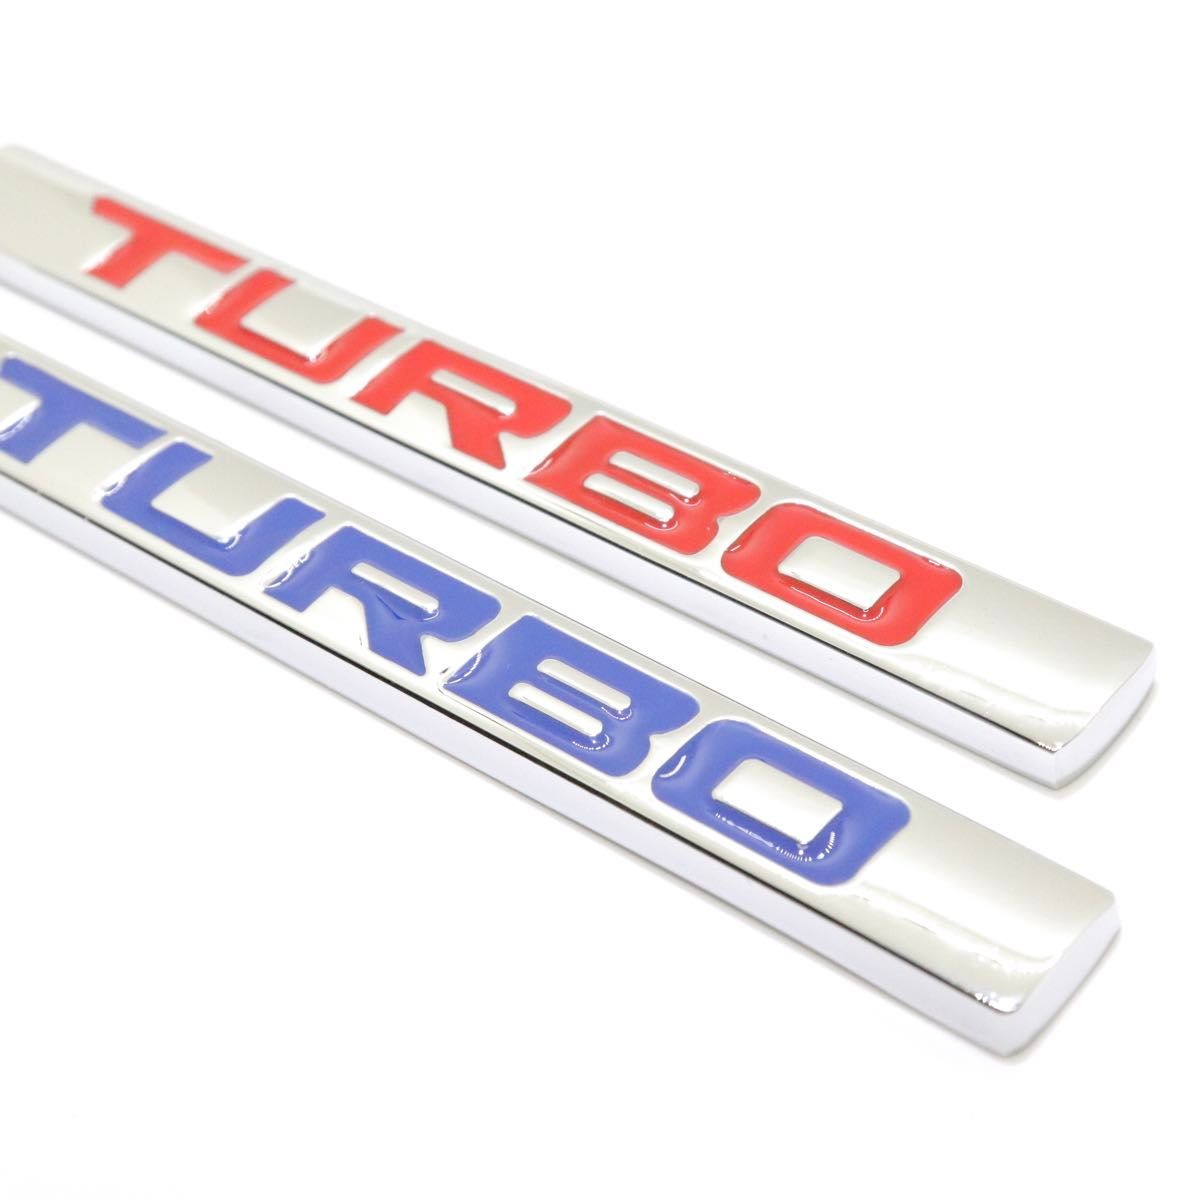 TURBO ターボ ロゴ クロームメッキ レッド 赤文字 エンブレム 外装 内装 車 カスタムパーツ 汎用品 カーパーツ